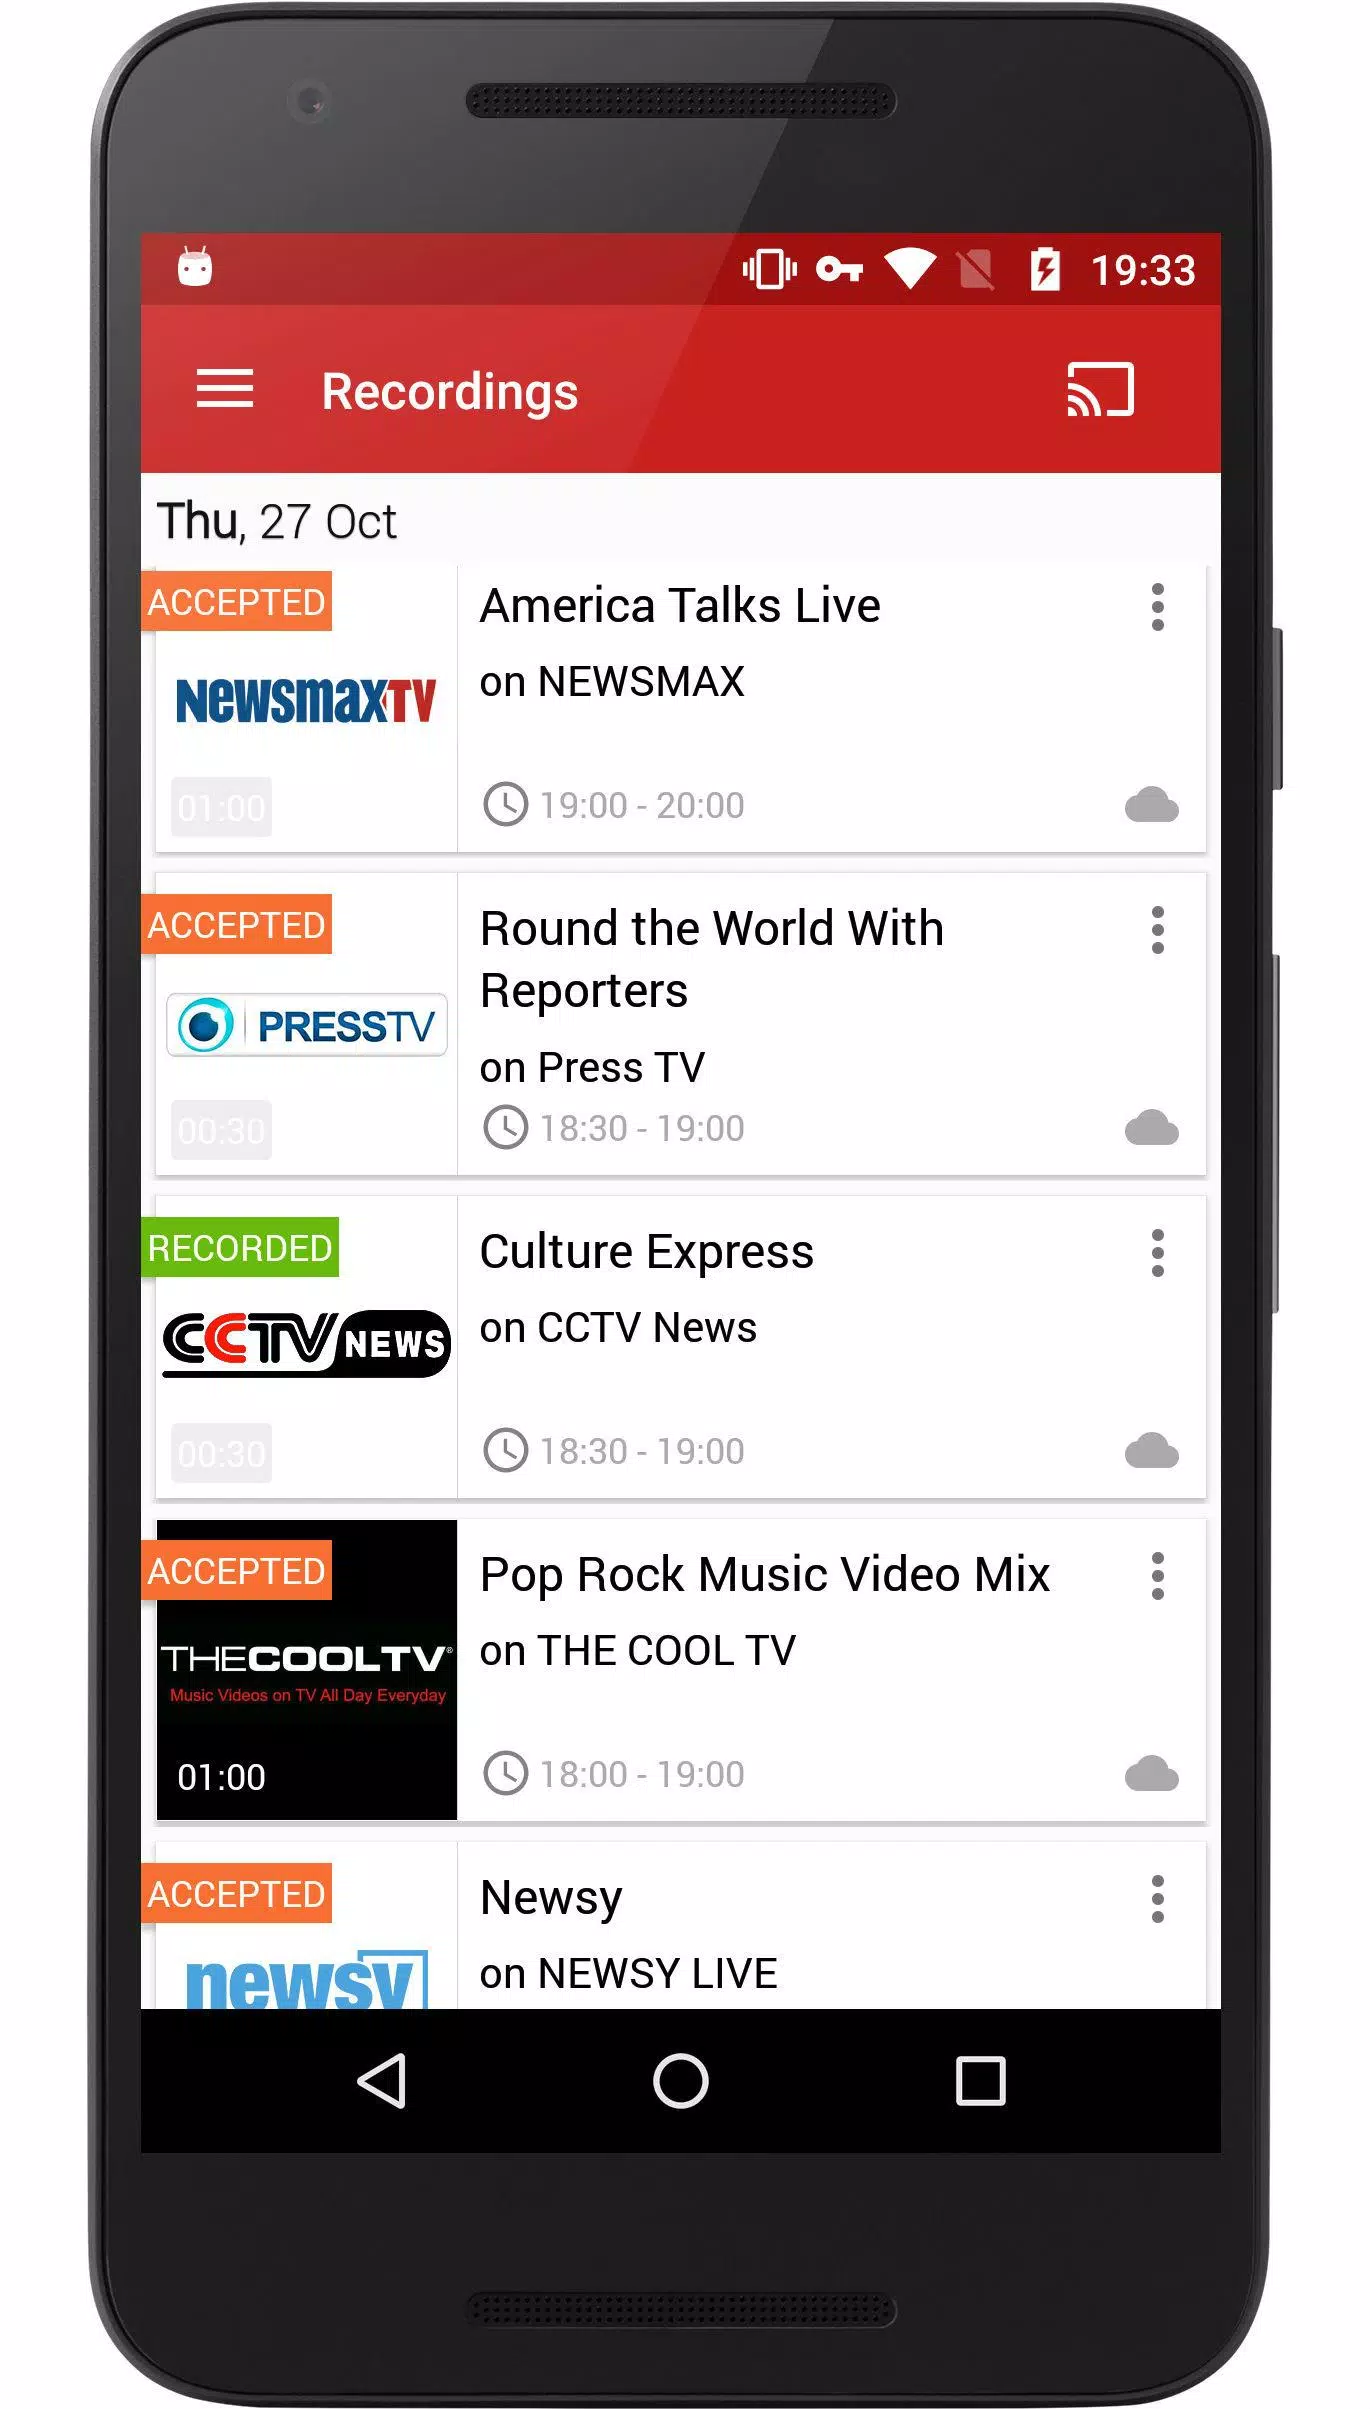 FilmOn EU Live TV Chromecast APK for Android Download